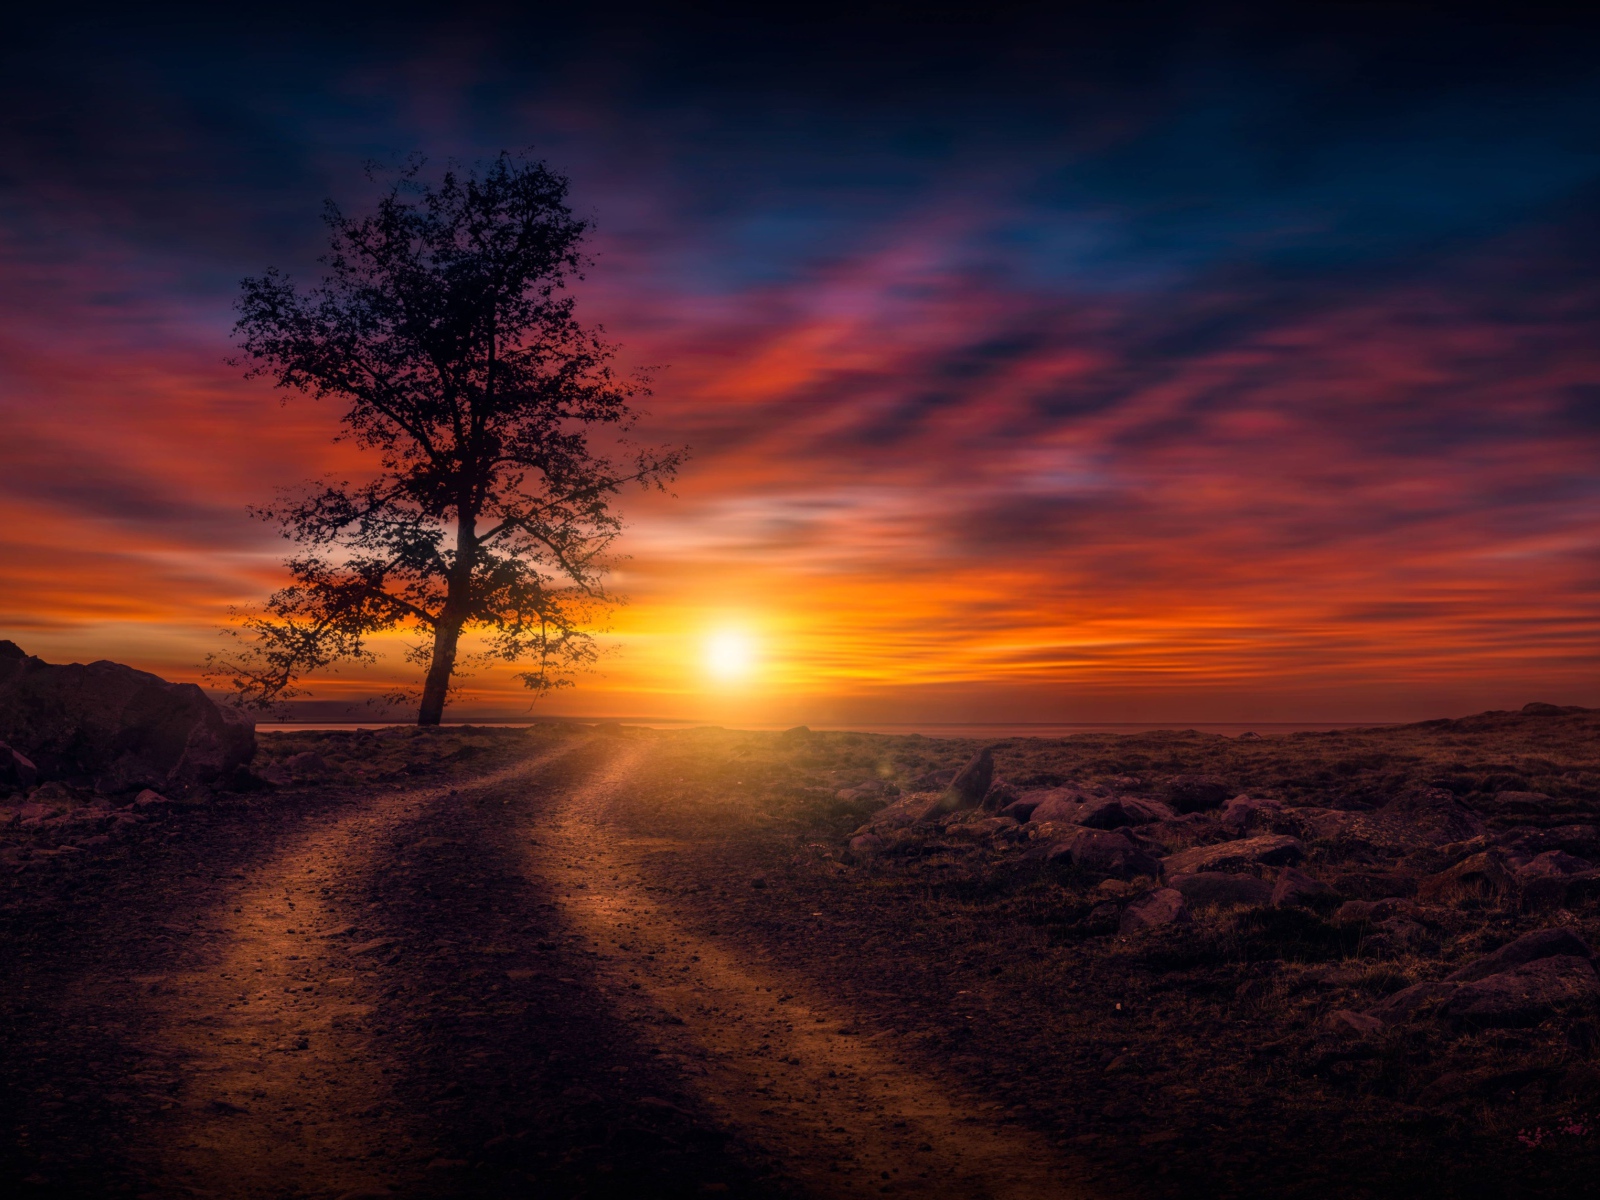 Дерево у дороги на закате солнца в небе 